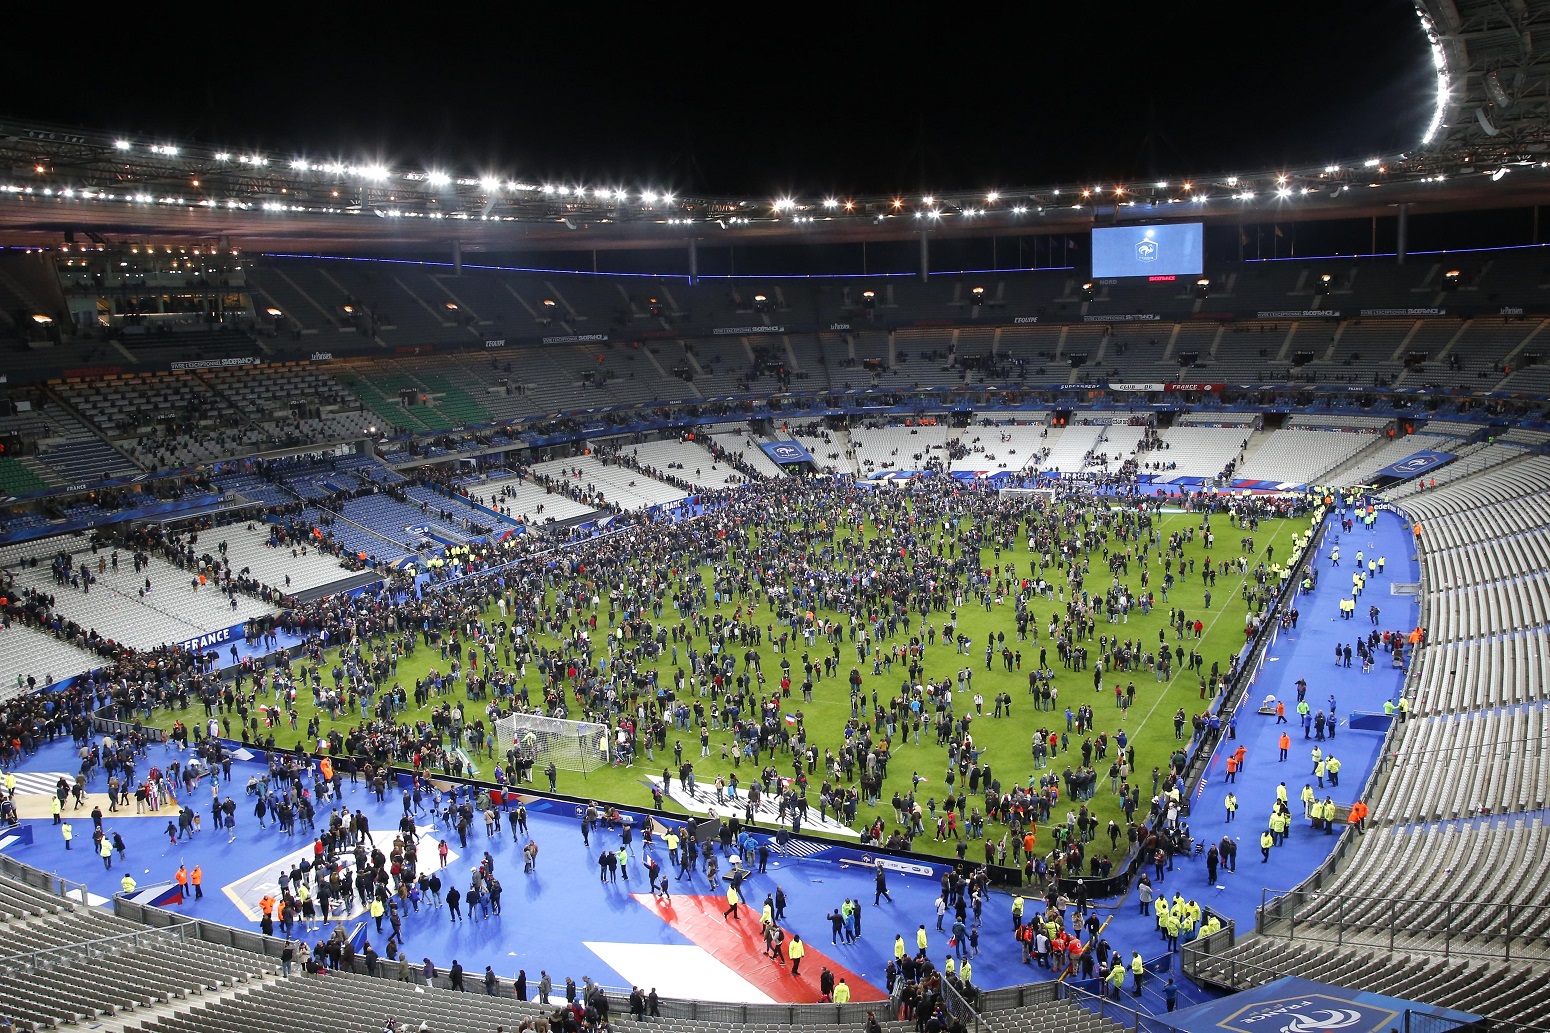 Kép a párizsi stadionból a novemberi terrortámadás után / Europress Fotóügynökség